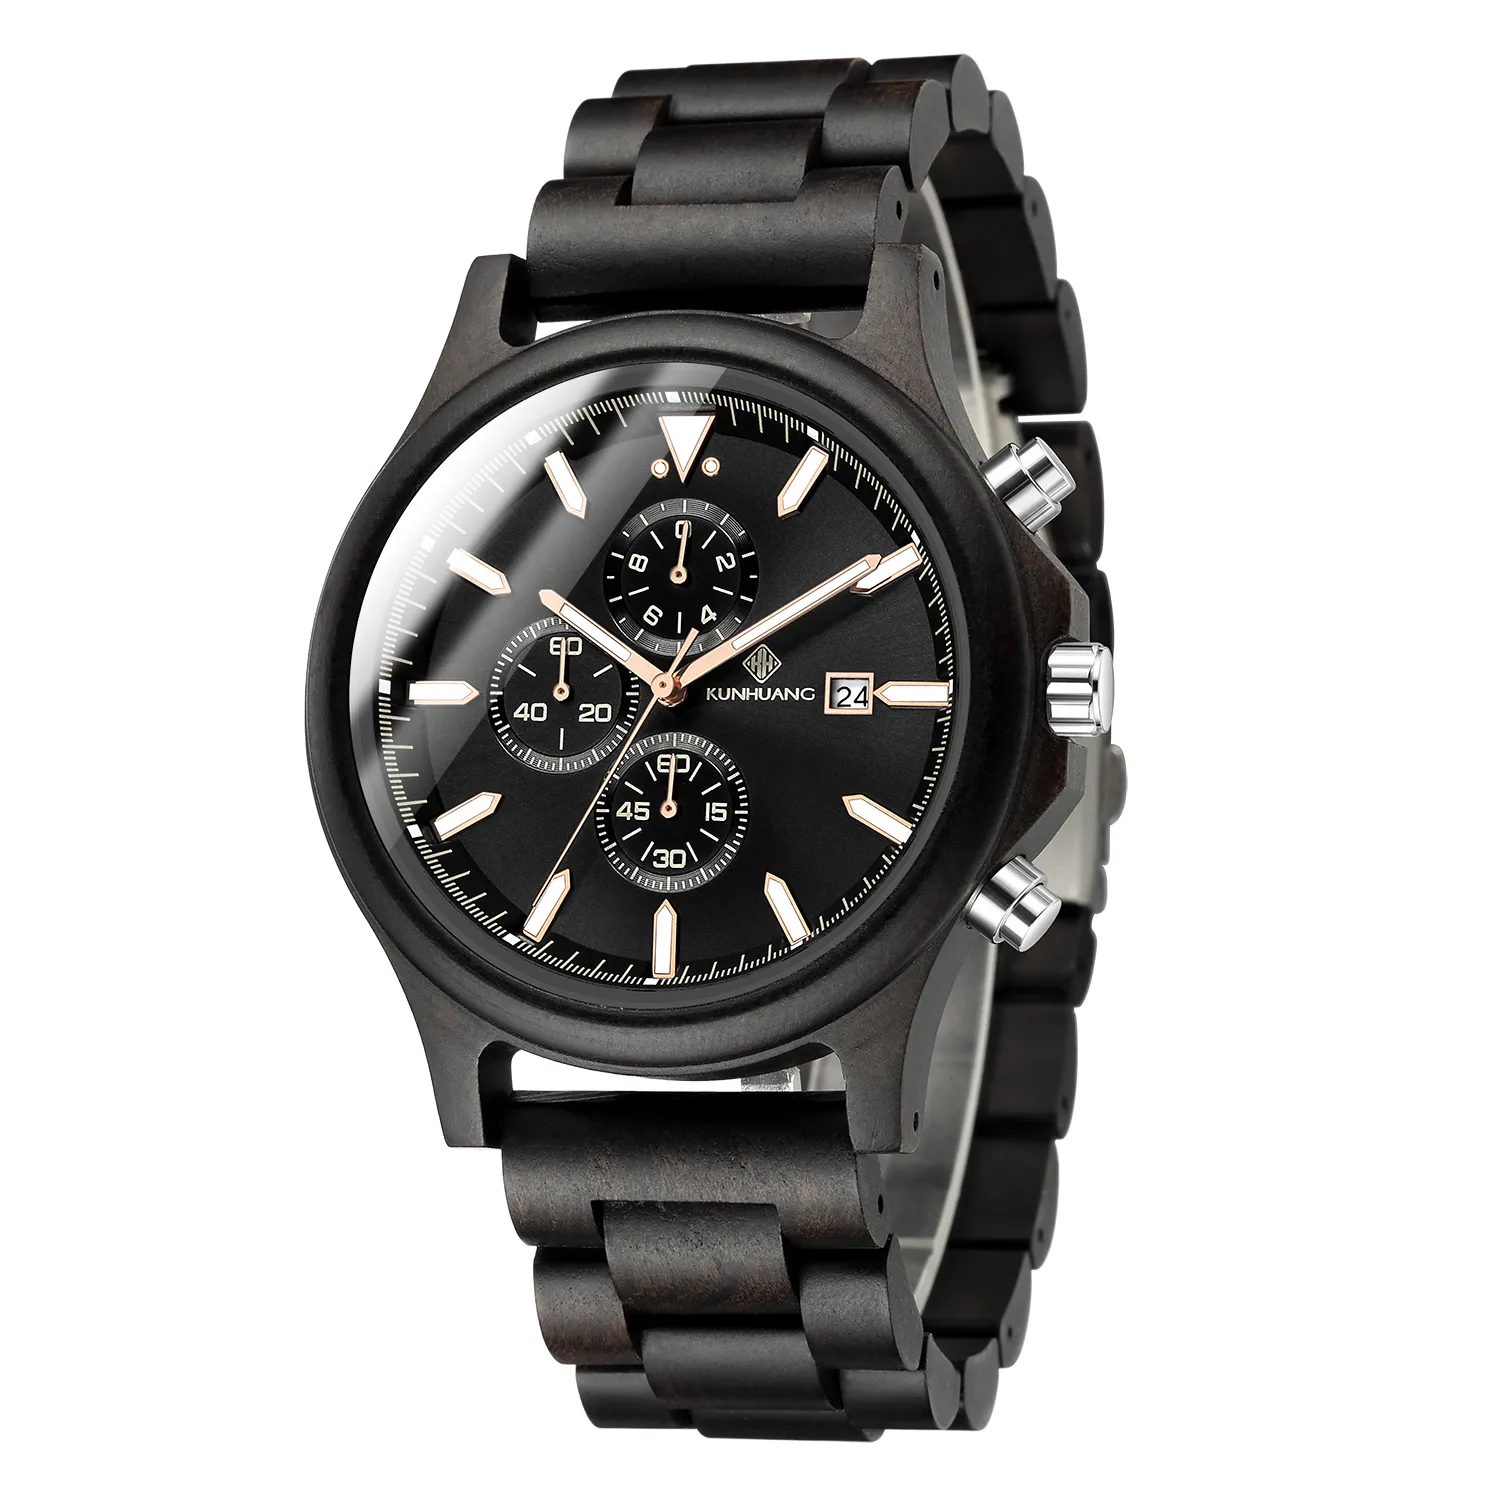 Männer Holz Uhr Chronograph Luxus Militärsport Uhren stilvolle lässige, personalisierte Holzquarz Uhren278b